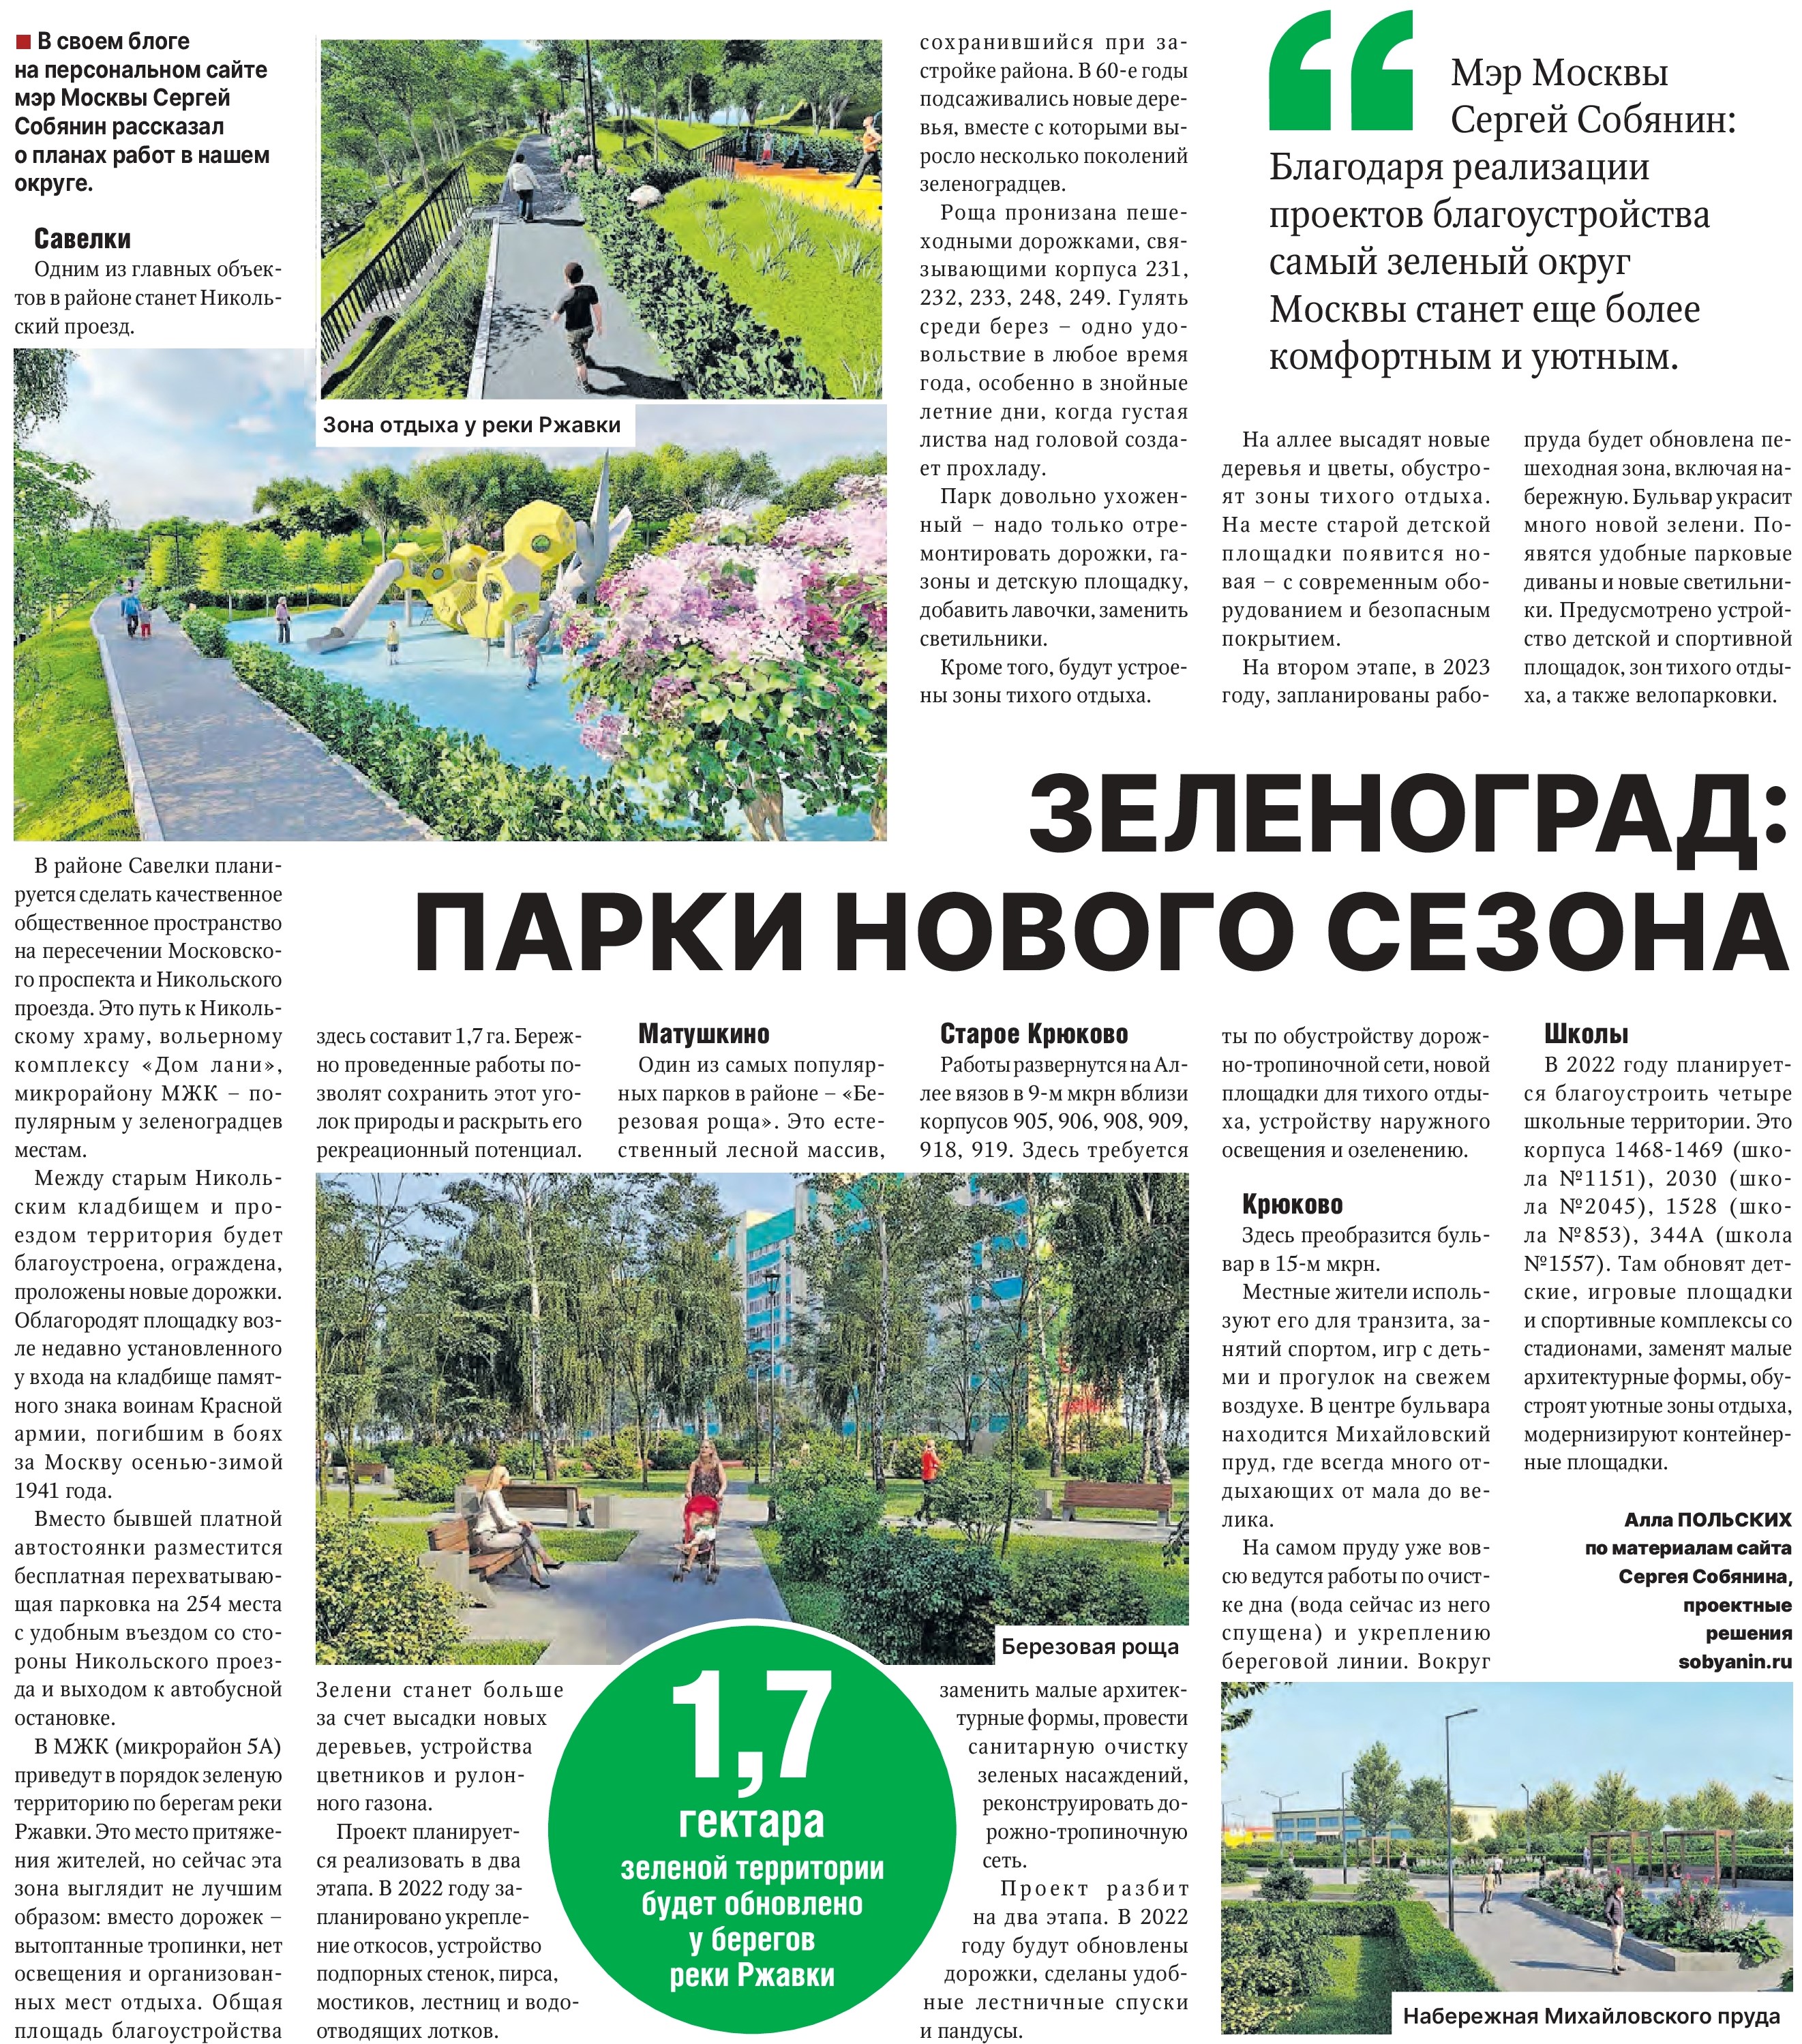 Зеленоград: парки нового сезона